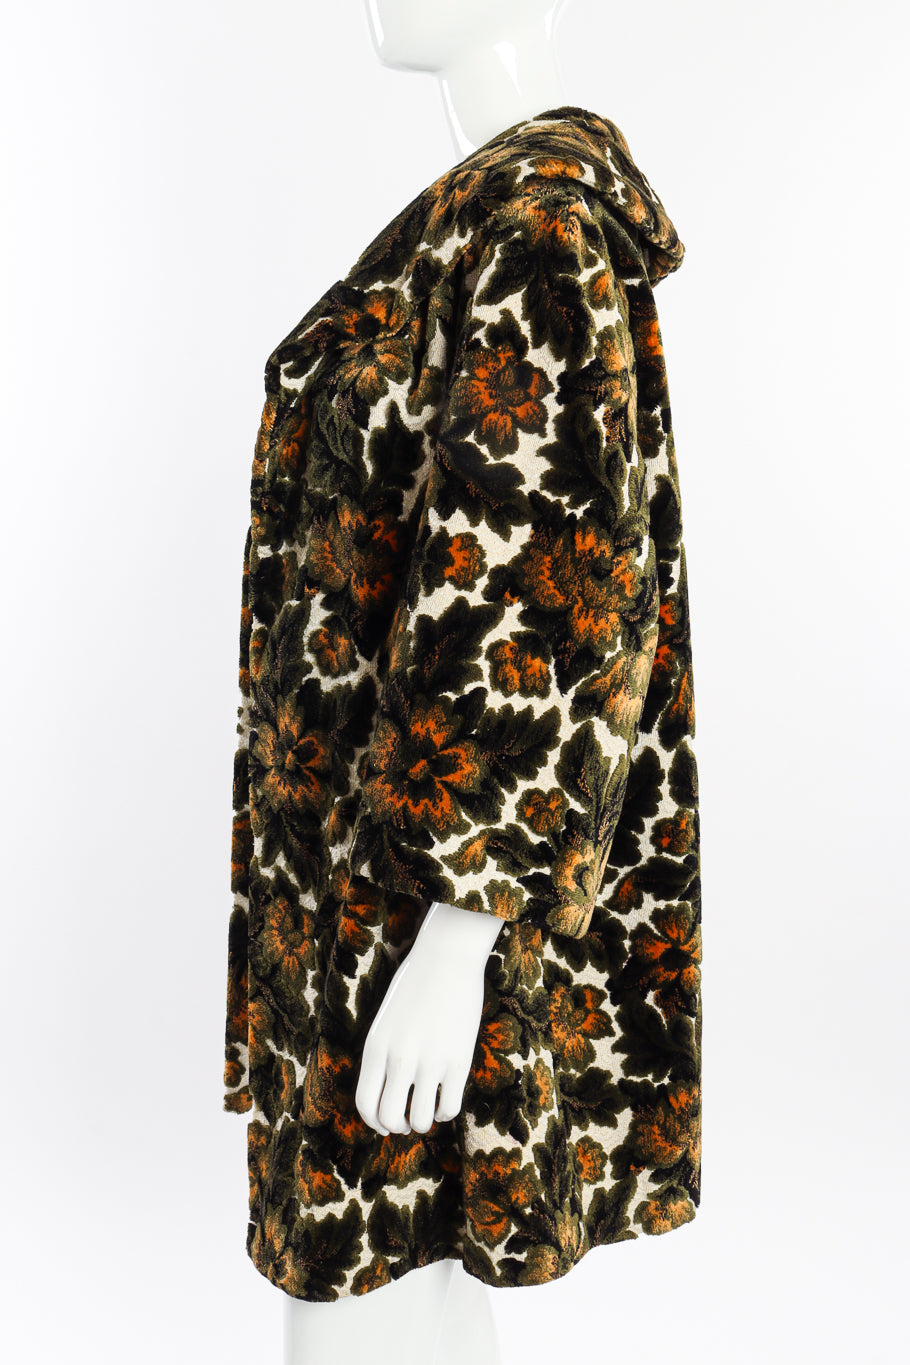 Vintage Floral Brocade Carpet Coat side on mannequin @recessla